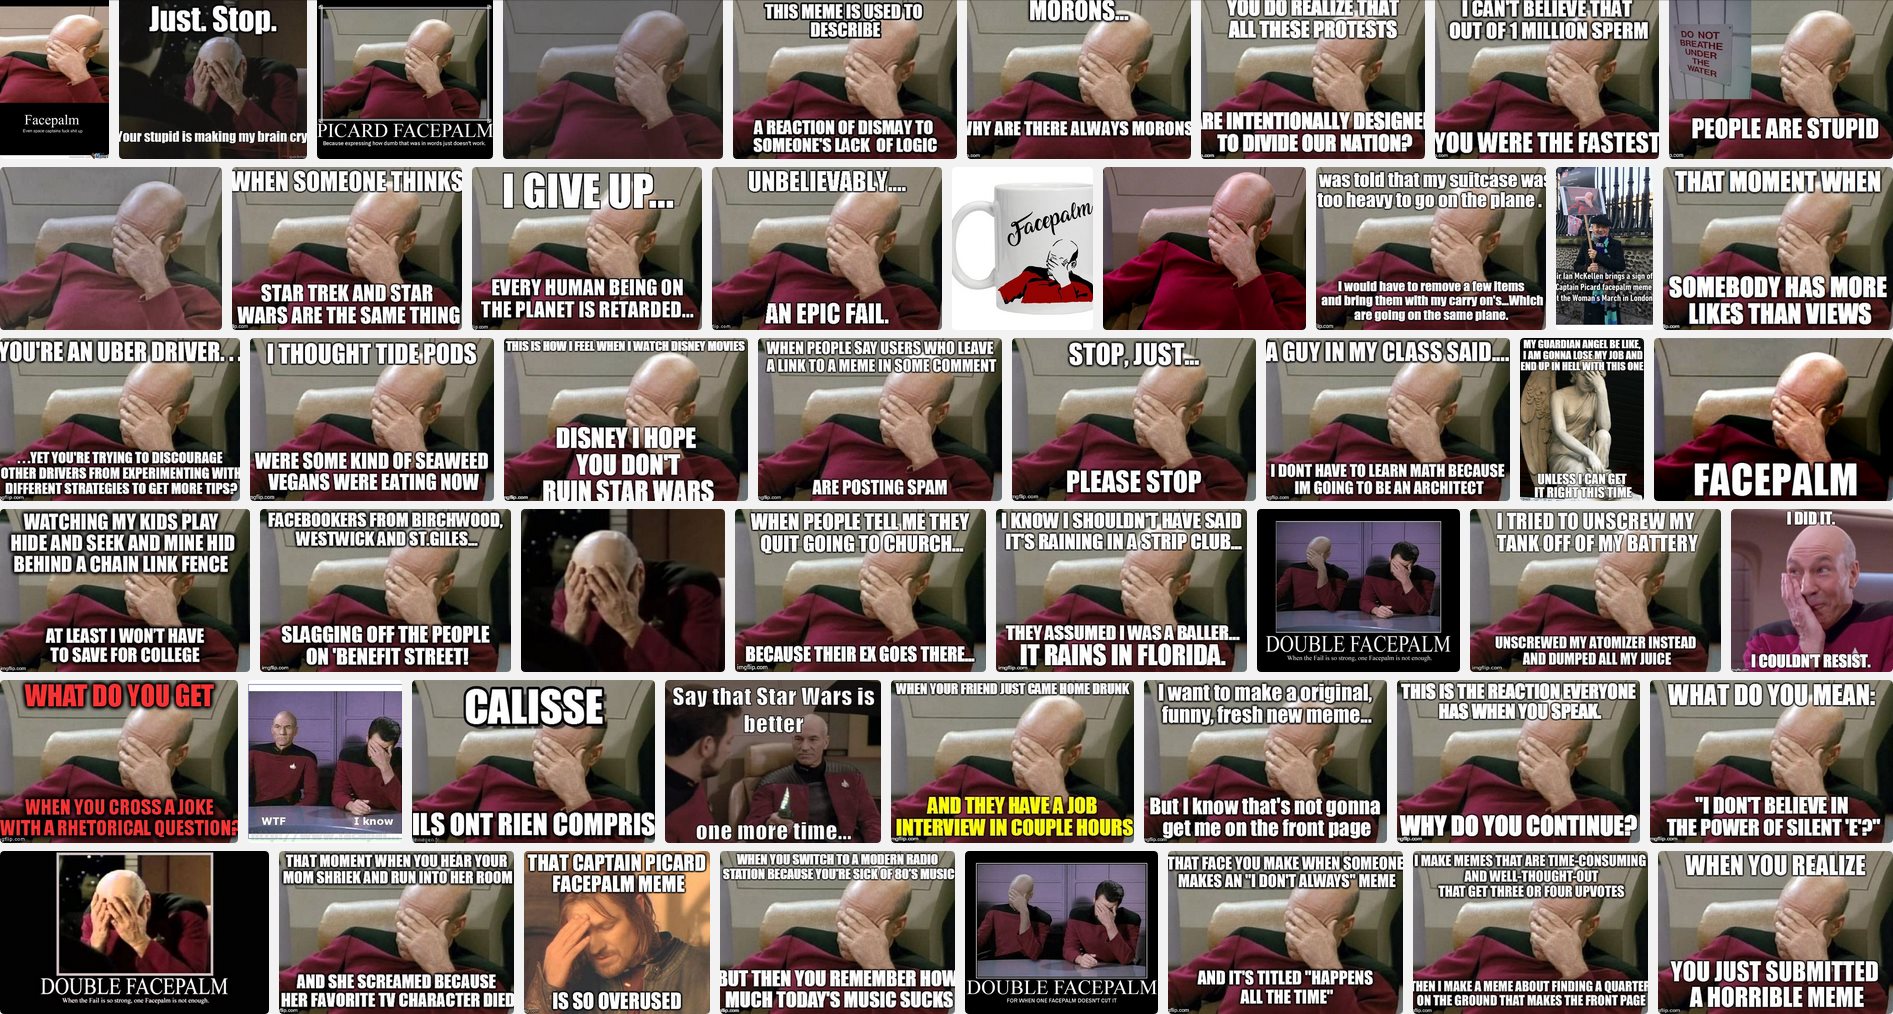 Suchergebnisse für "Picard Facepalm Meme" (Screenshot: DuckDuckGo.com, 10.03.2019)